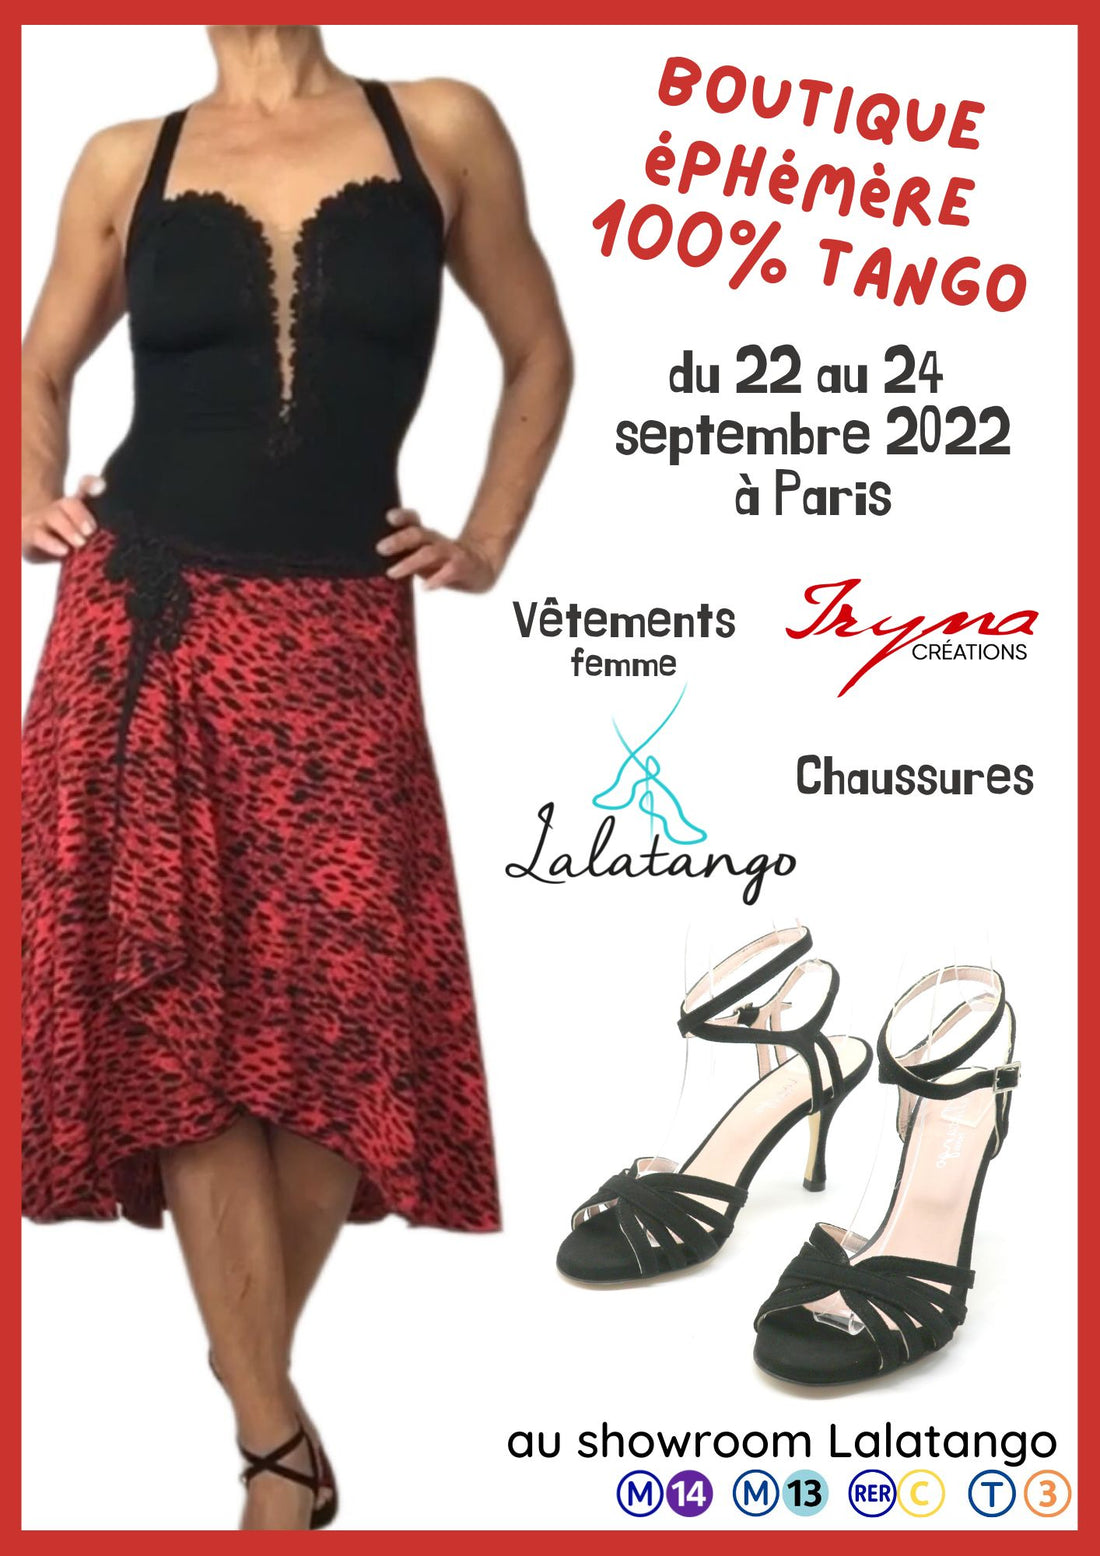 BOUTIQUE EPHEMERE : chaussures Lalatango et vêtements Iryna Créations du 22 au 24 septembre à Paris